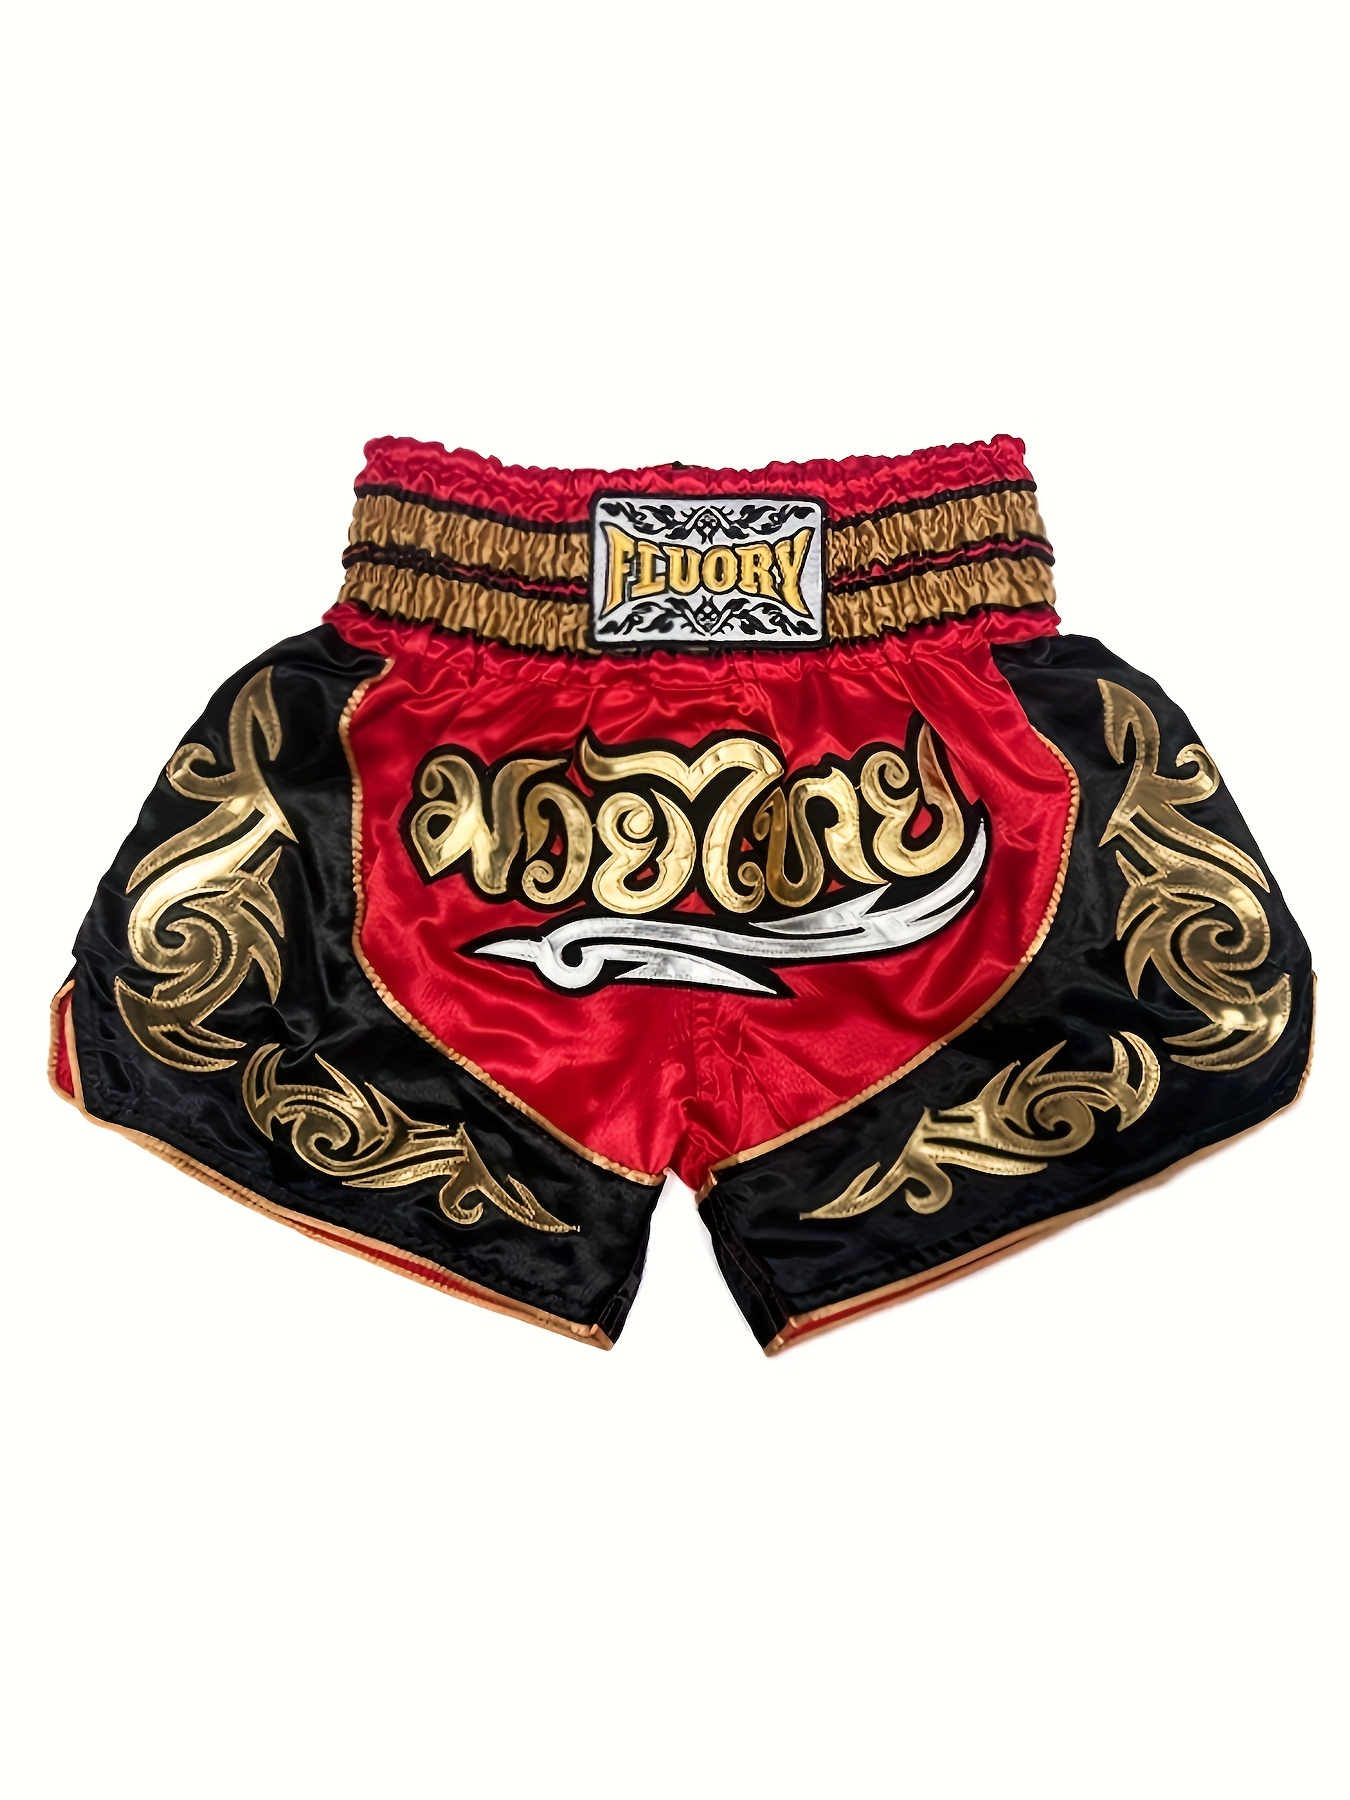  Maxim Party Supplies Disfraz de boxeo para hombre adulto,  campeón mundial pesado, boxeador, incluye bata y pantalones cortos, Rojo -  : Ropa, Zapatos y Joyería